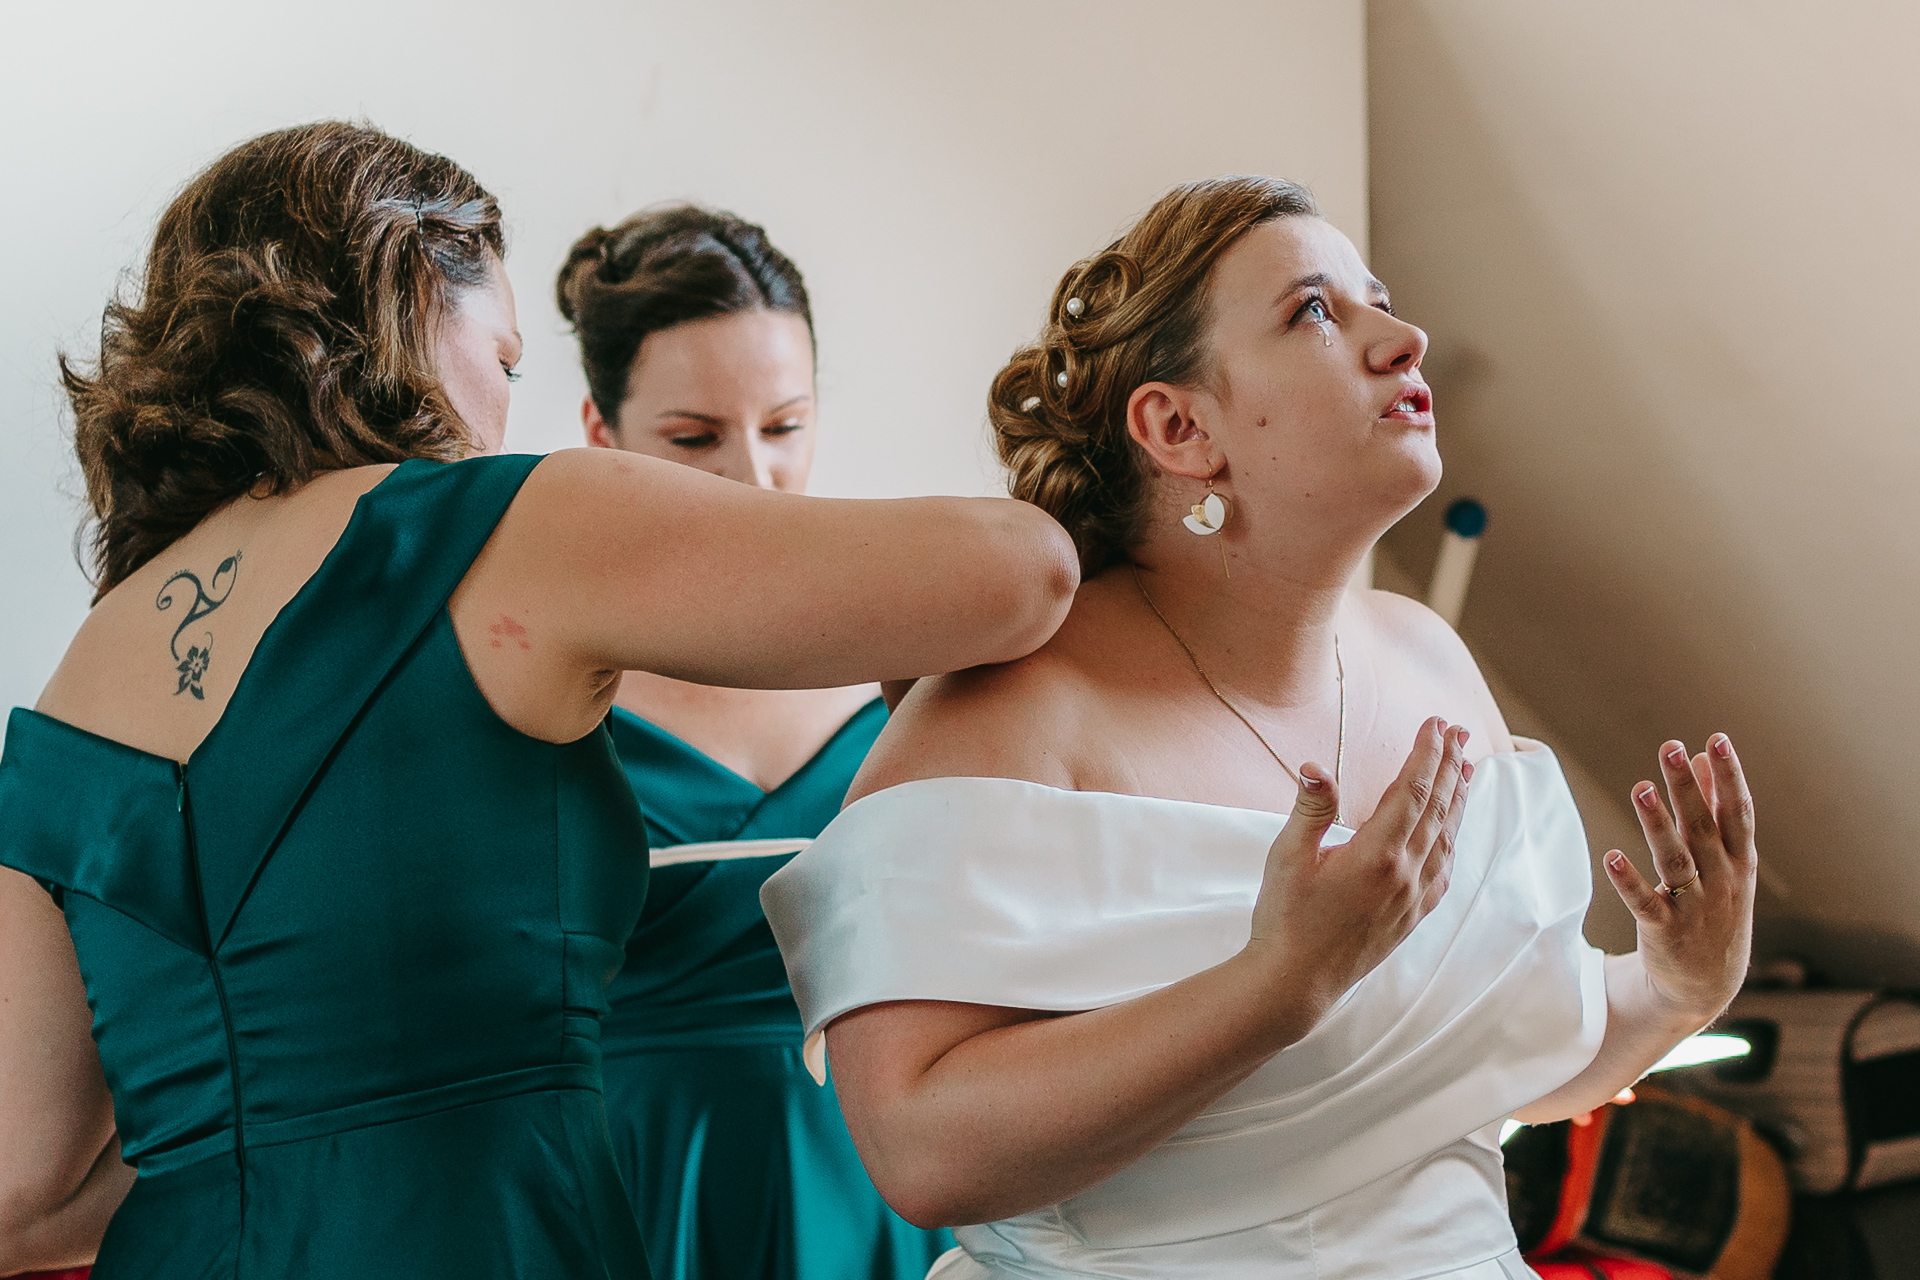 Deux demoiselles d'honneur s'entraident avec leurs robes lors d'un mariage de photographe.